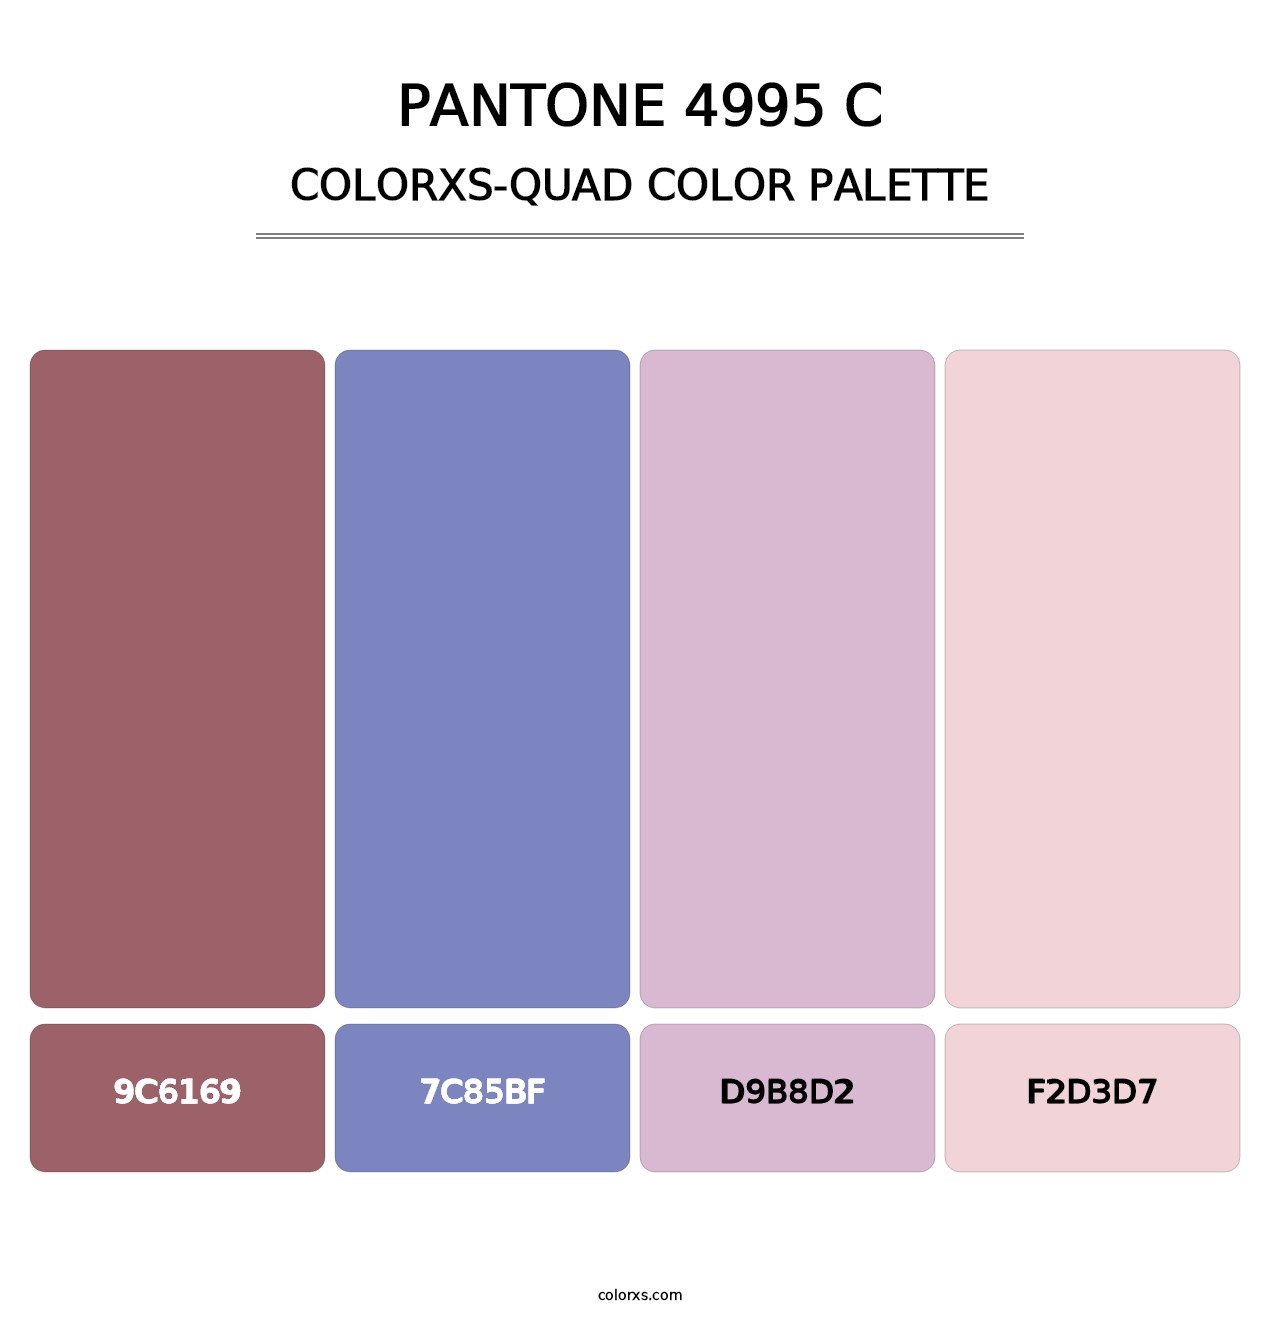 PANTONE 4995 C - Colorxs Quad Palette